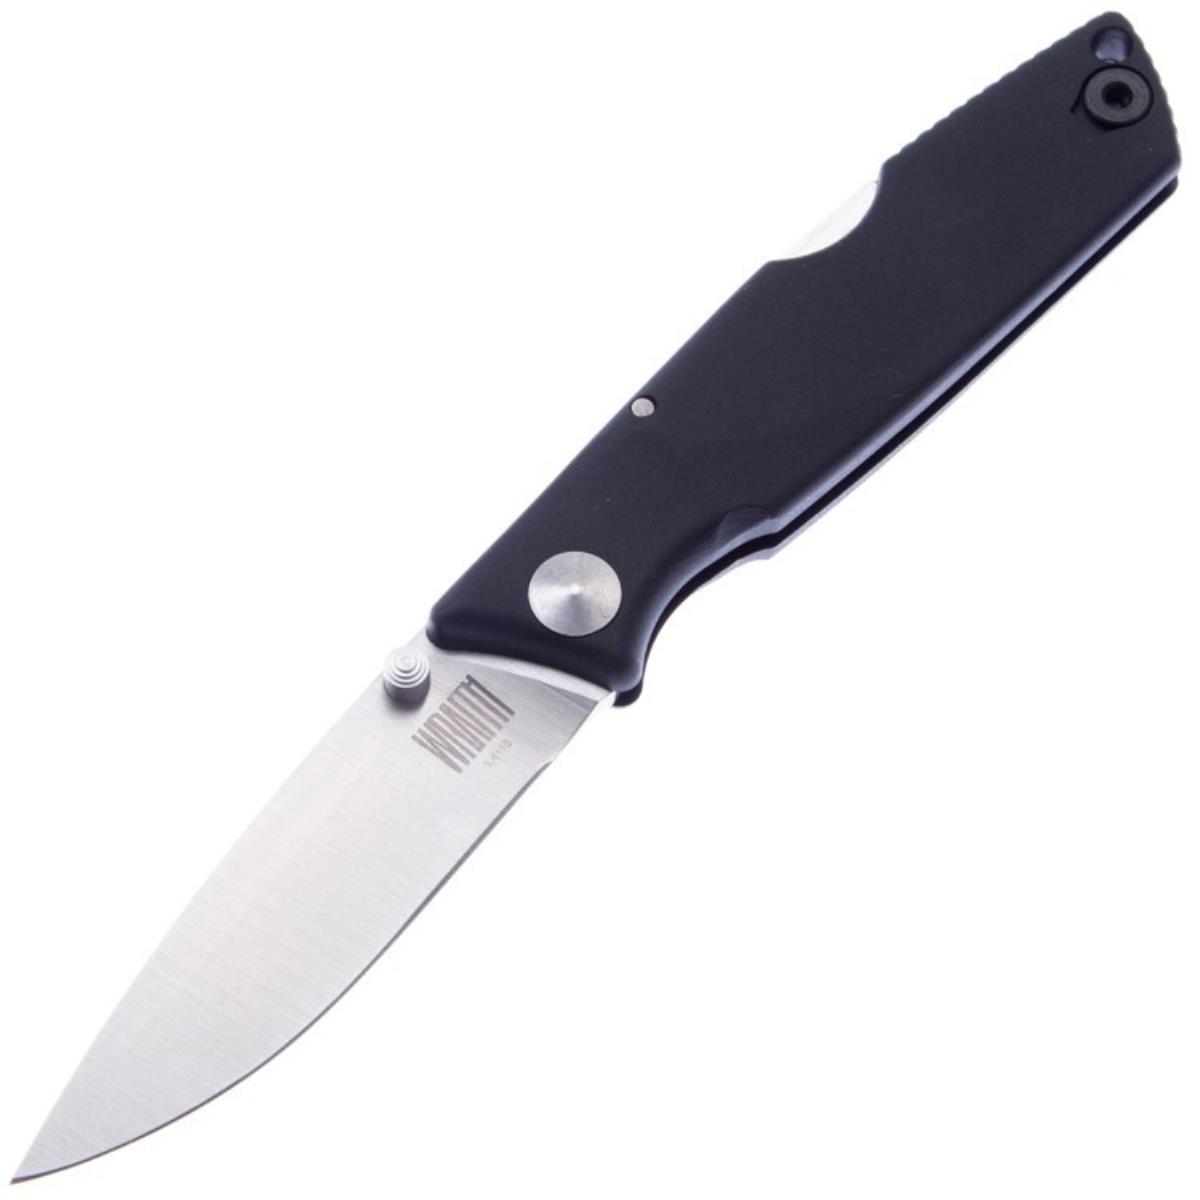 Нож OKC Wraith складн.,чёрная полимерная рукоять, клинок 1.4116 (8798)  ONTARIO нож с фиксированным клинком ontario little bird black cord сталь 1095 рукоять паракорд black